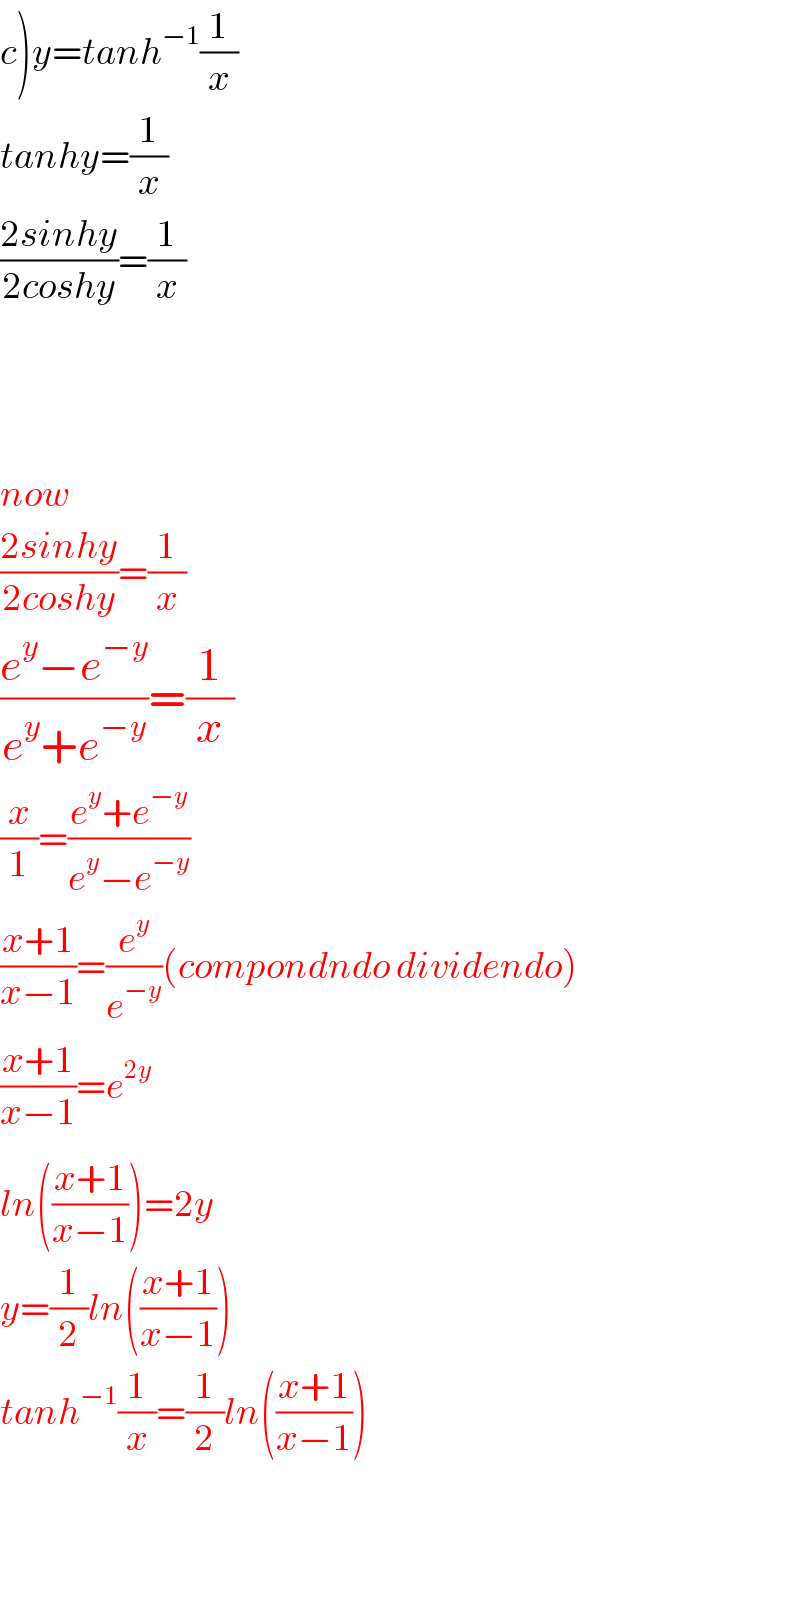 c)y=tanh^(−1) (1/x)  tanhy=(1/x)  ((2sinhy)/(2coshy))=(1/x)        now  ((2sinhy)/(2coshy))=(1/x)  ((e^y −e^(−y) )/(e^y +e^(−y) ))=(1/x)  (x/1)=((e^y +e^(−y) )/(e^y −e^(−y) ))  ((x+1)/(x−1))=(e^y /e^(−y) )(compondndo dividendo)  ((x+1)/(x−1))=e^(2y)   ln(((x+1)/(x−1)))^ =2y  y=(1/2)ln(((x+1)/(x−1)))  tanh^(−1) (1/x)=(1/2)ln(((x+1)/(x−1)))      